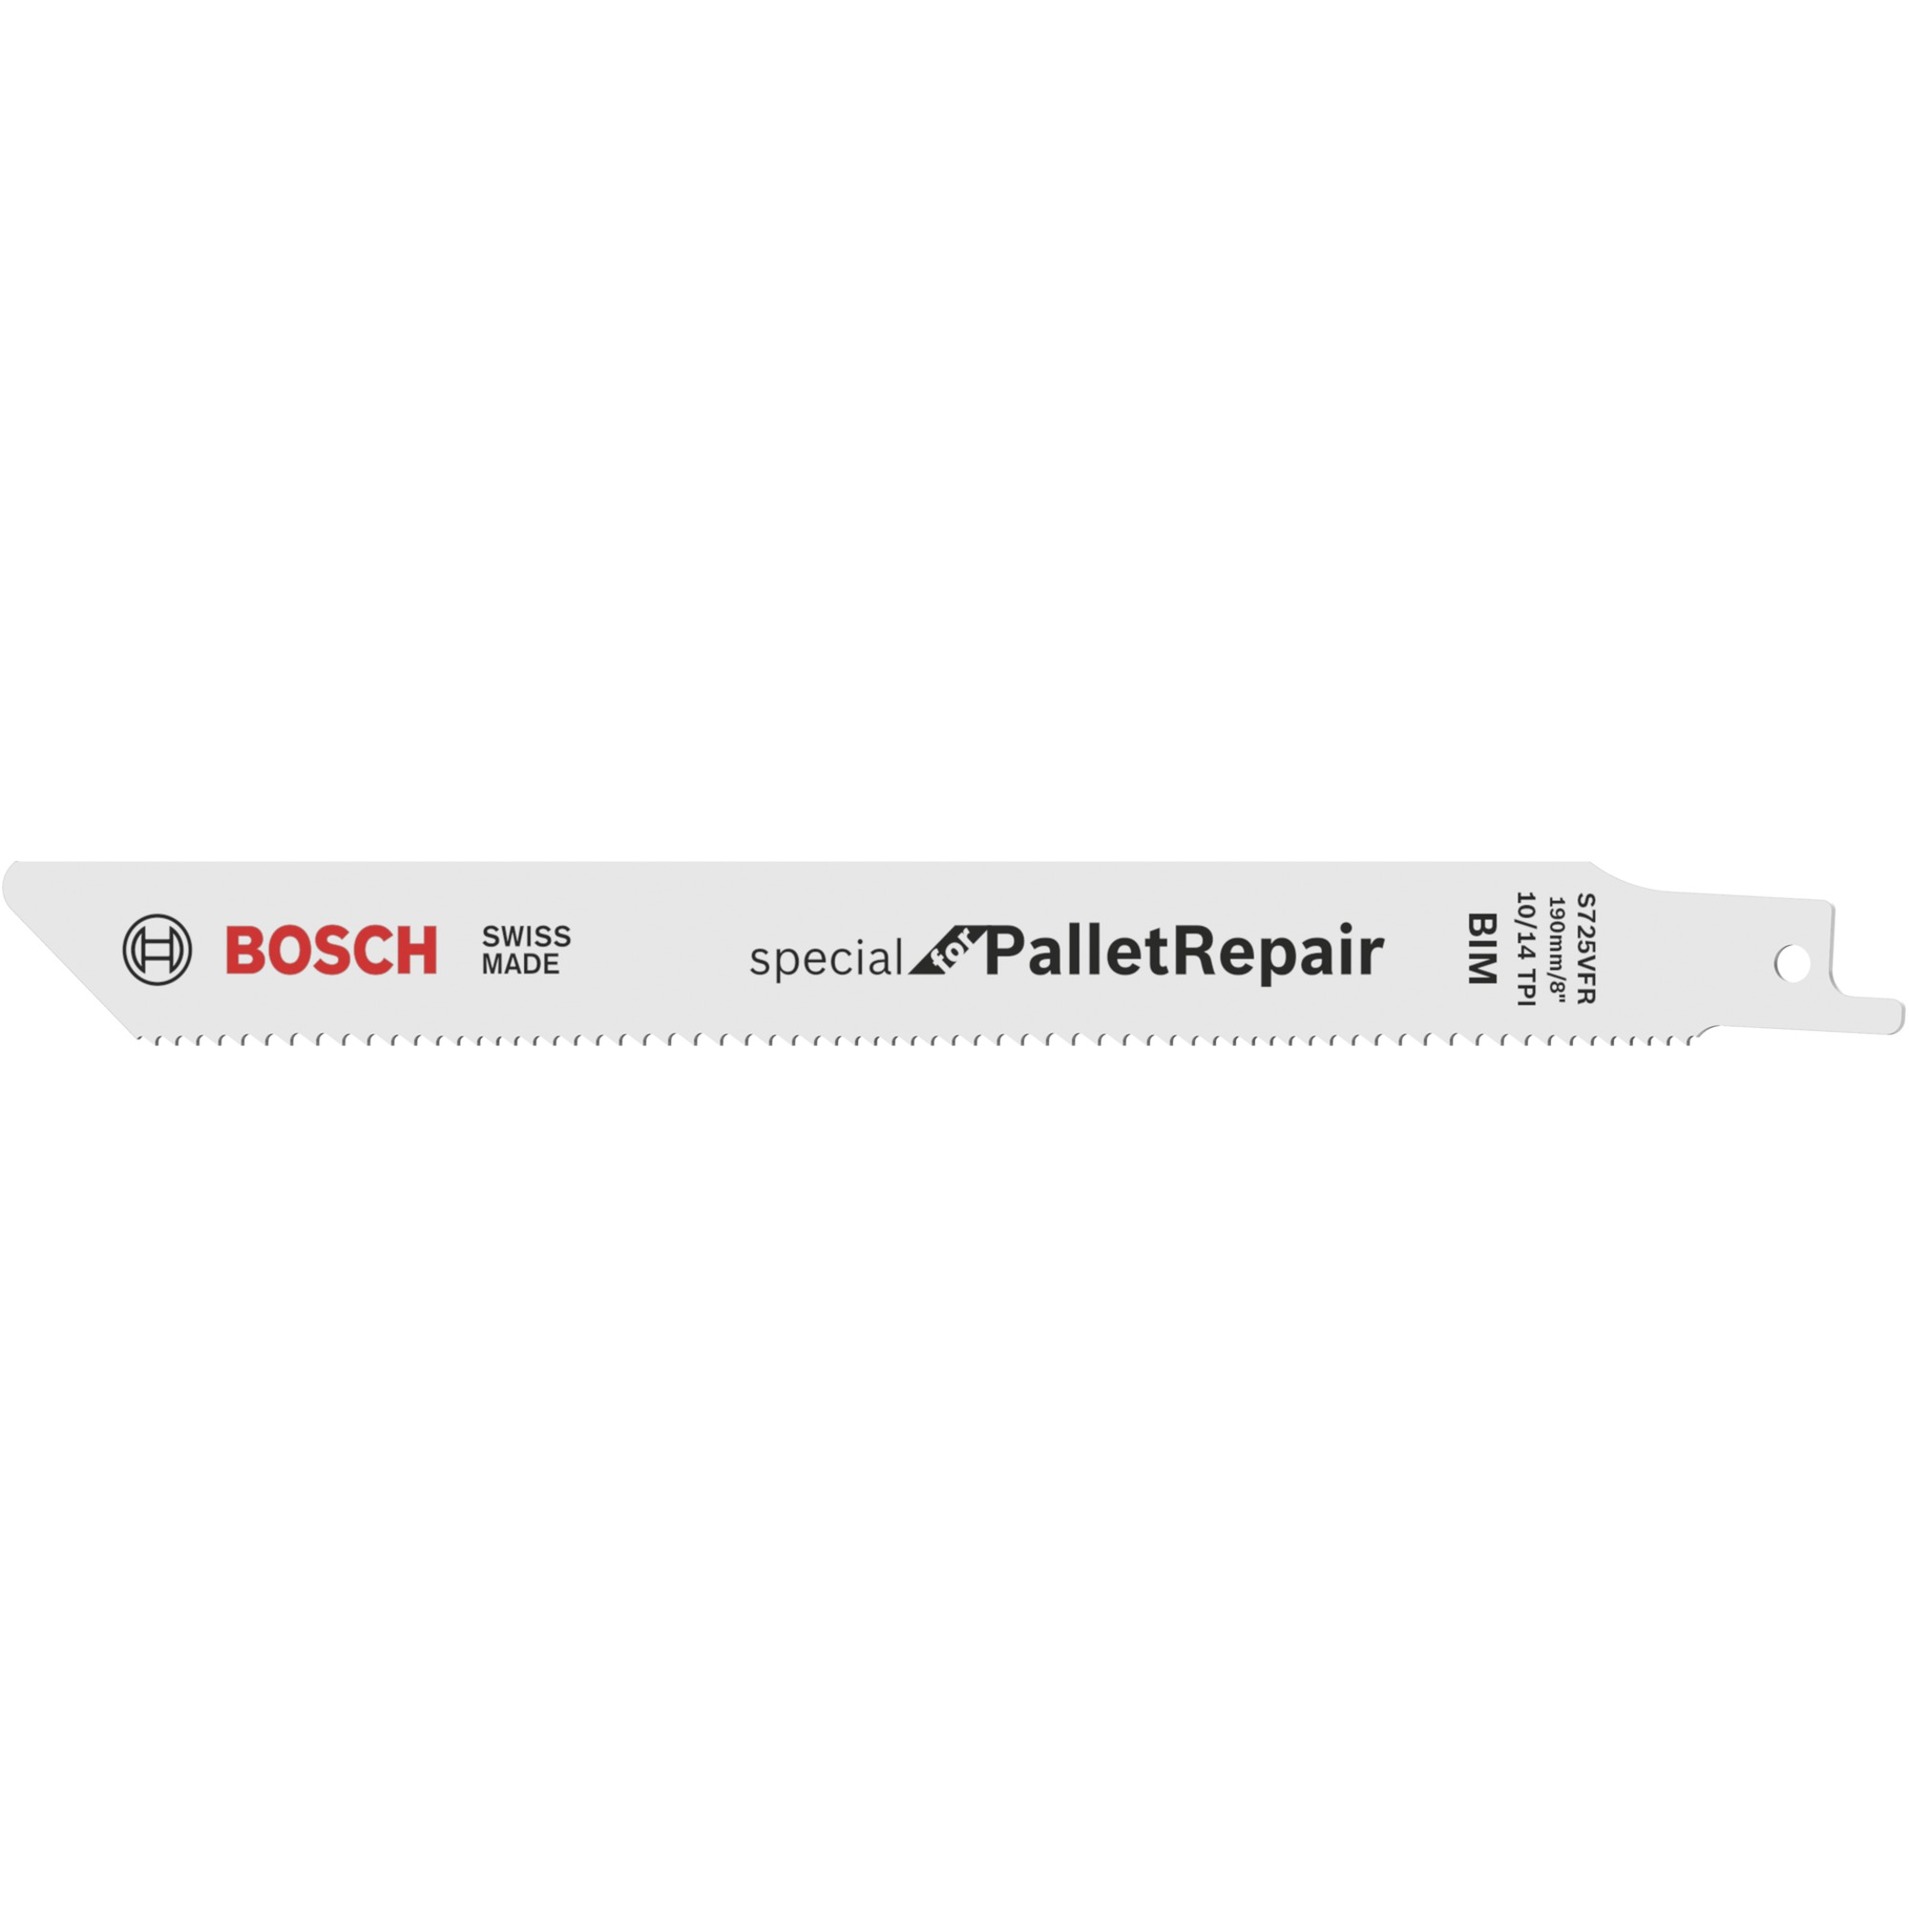 Säbelsägeblatt S 725 VFR Special for Pallet Repair, 100 Stück von Bosch